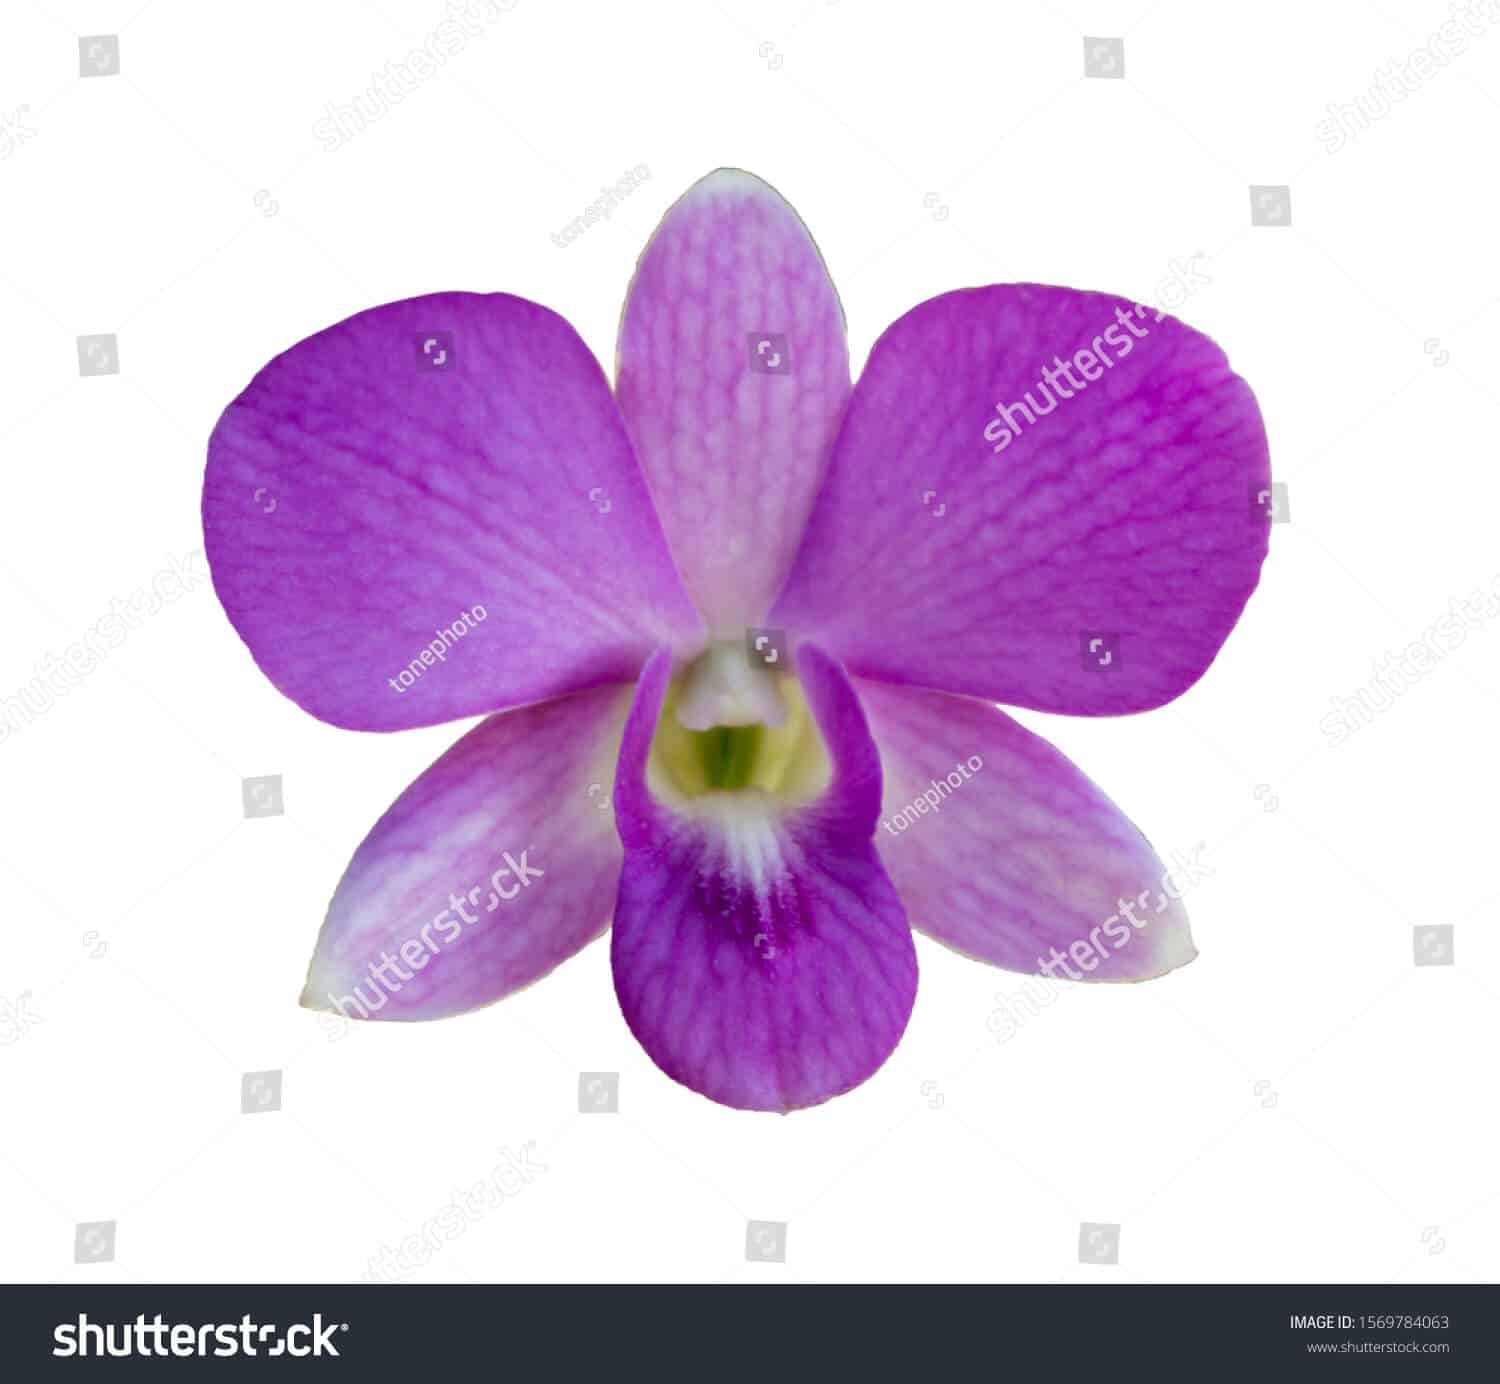 770 ngàn hình ảnh hoa lan chất lượng cao dành cho in ấn trên Shutterstock